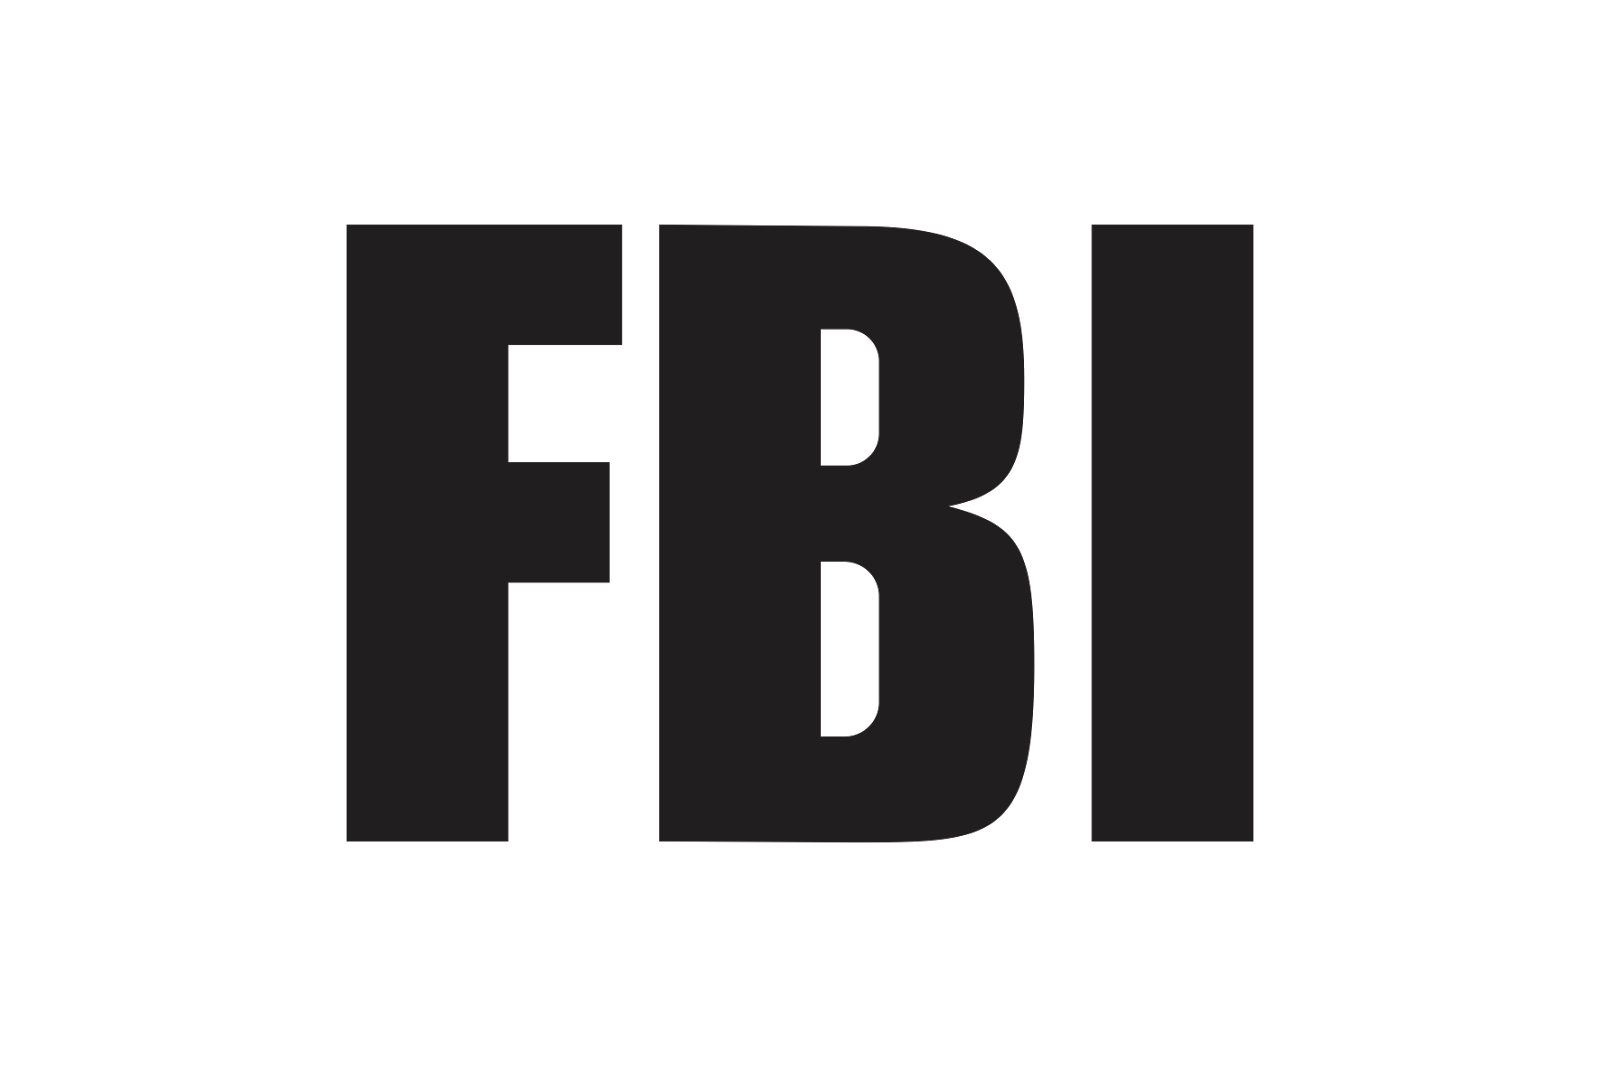 FBI_zwart